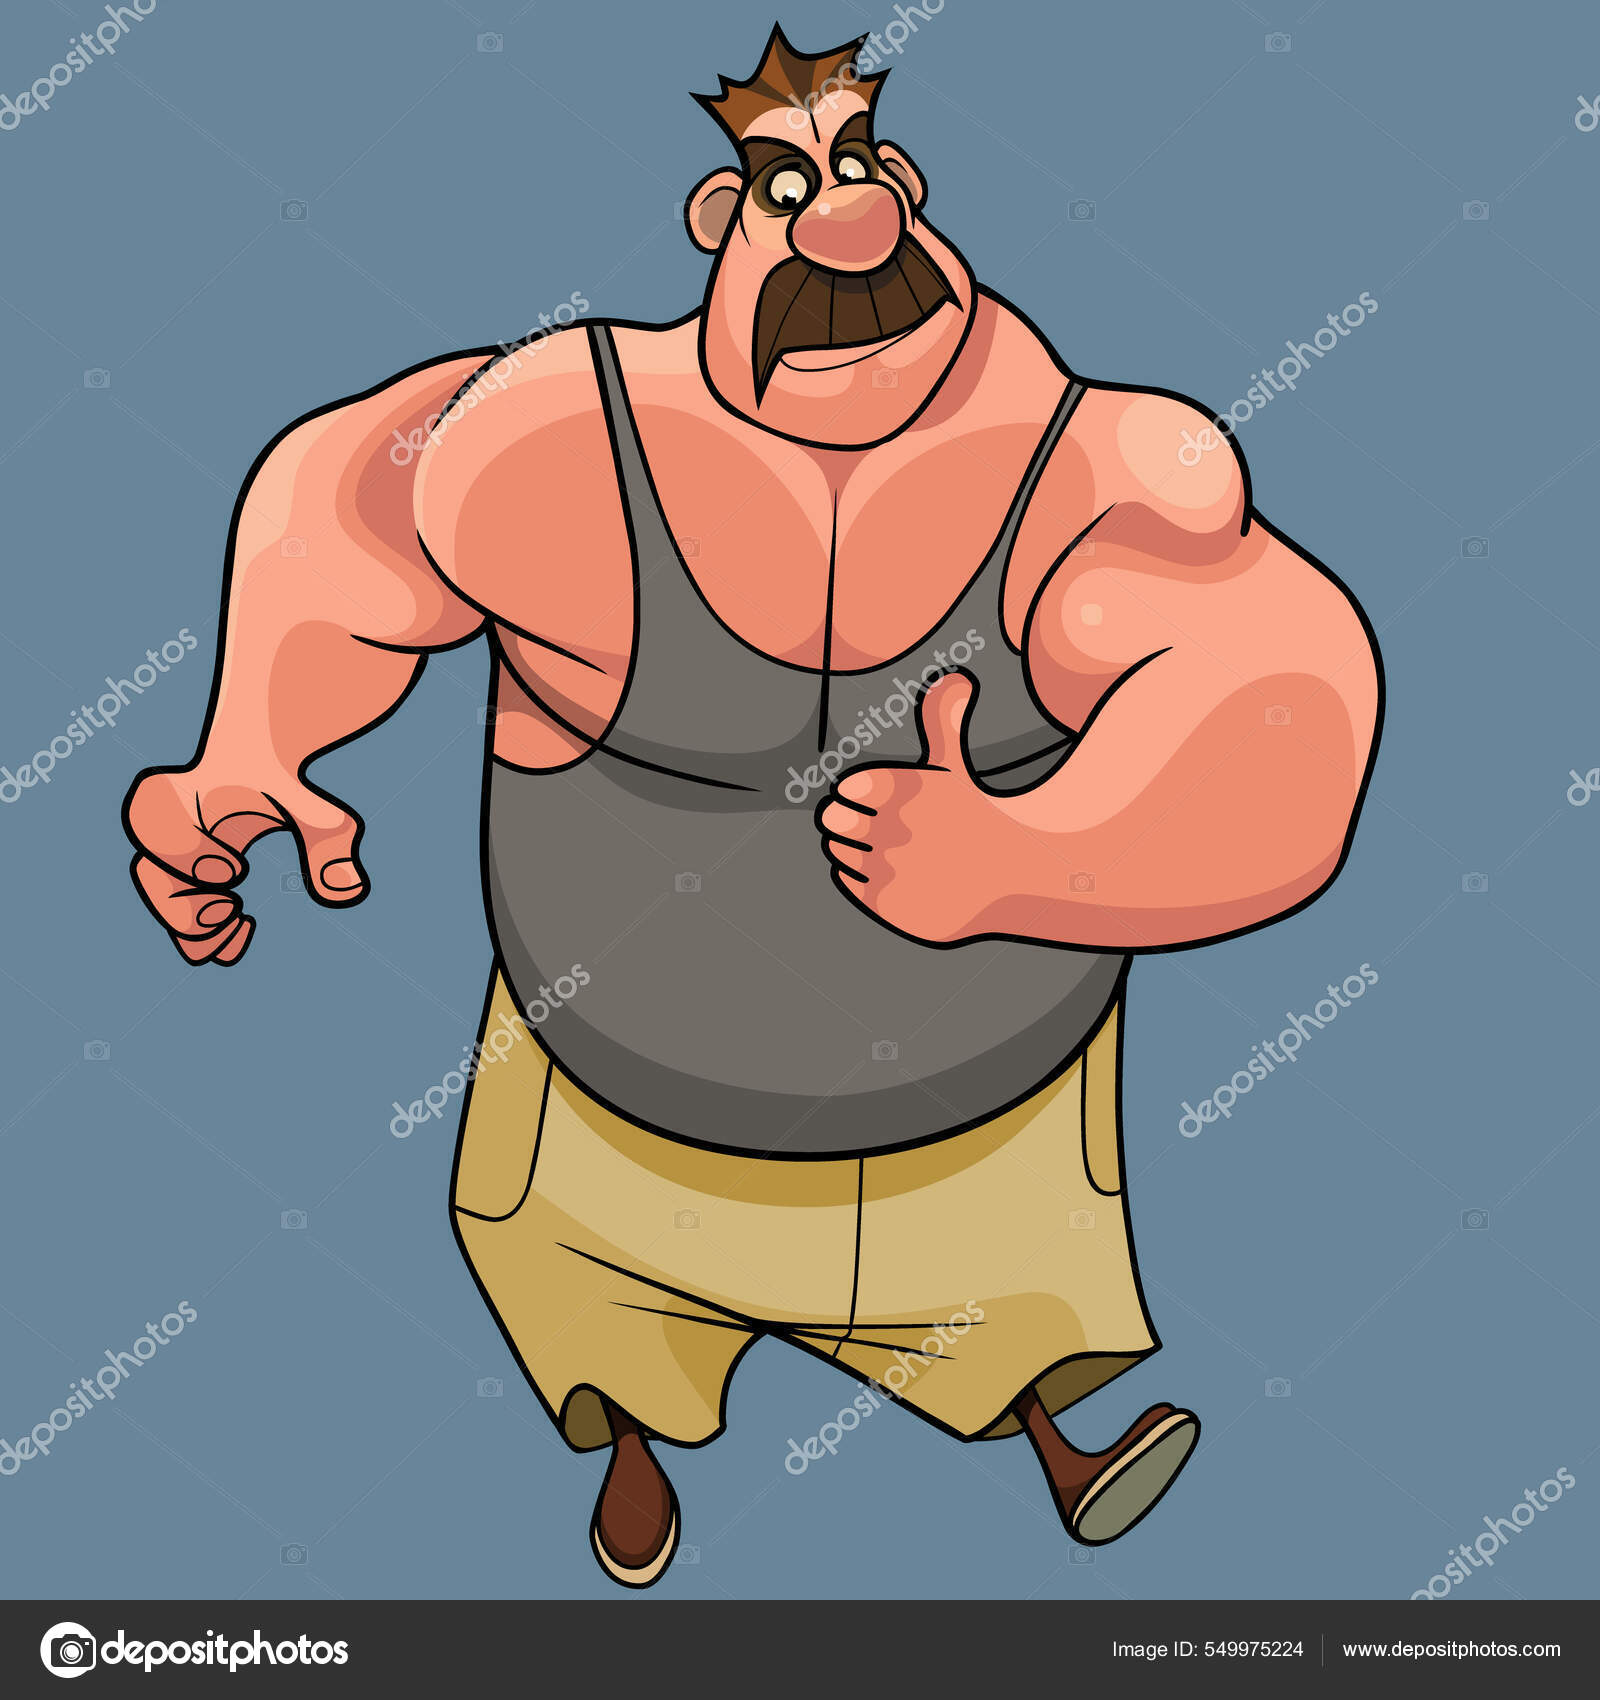 https://st.depositphotos.com/8056928/54997/v/1600/depositphotos_549975224-stock-illustration-cartoon-mustachioed-muscular-man-bodybuilder.jpg